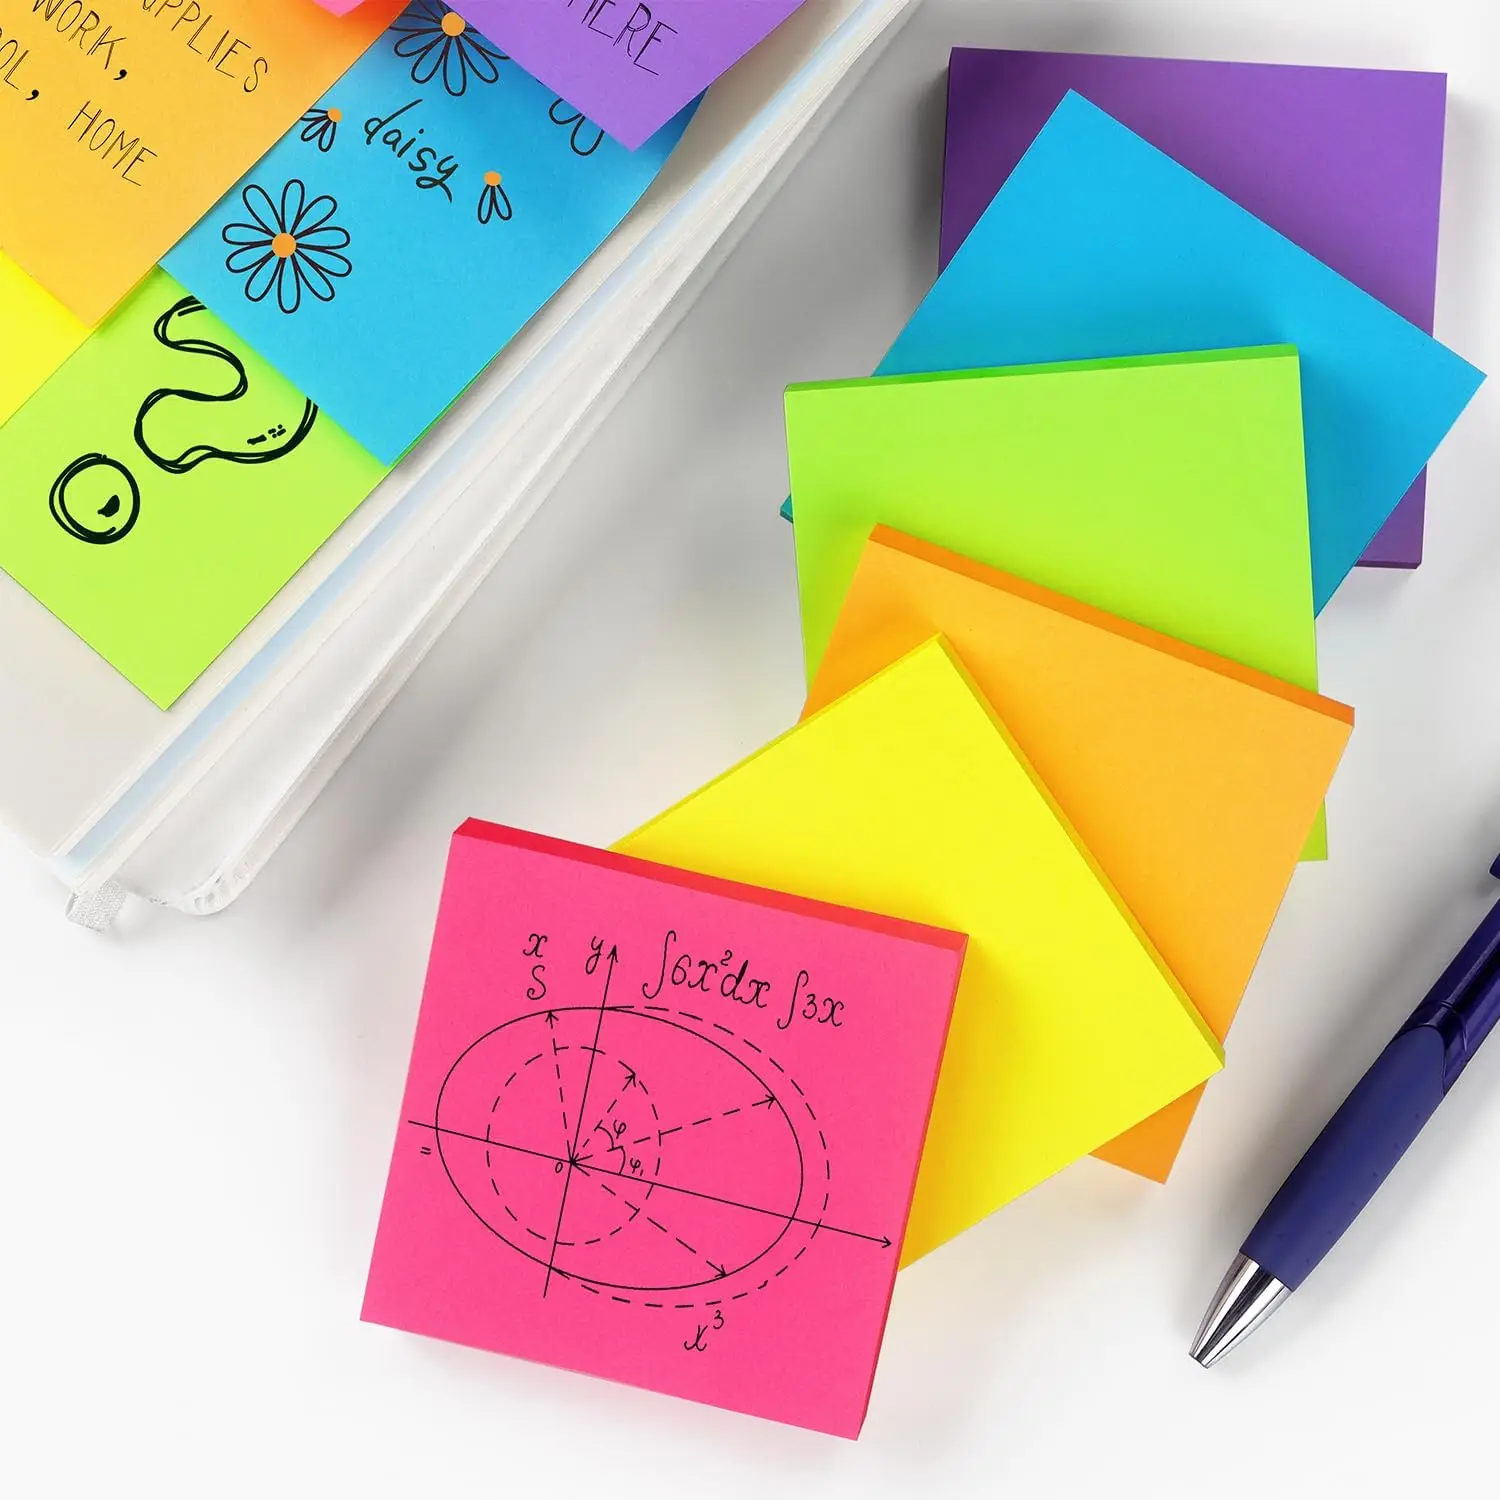 6-цветные самоклеящиеся блокноты для заметок ярких цветов, которые легко размещать дома, в офисе, в ноутбуке